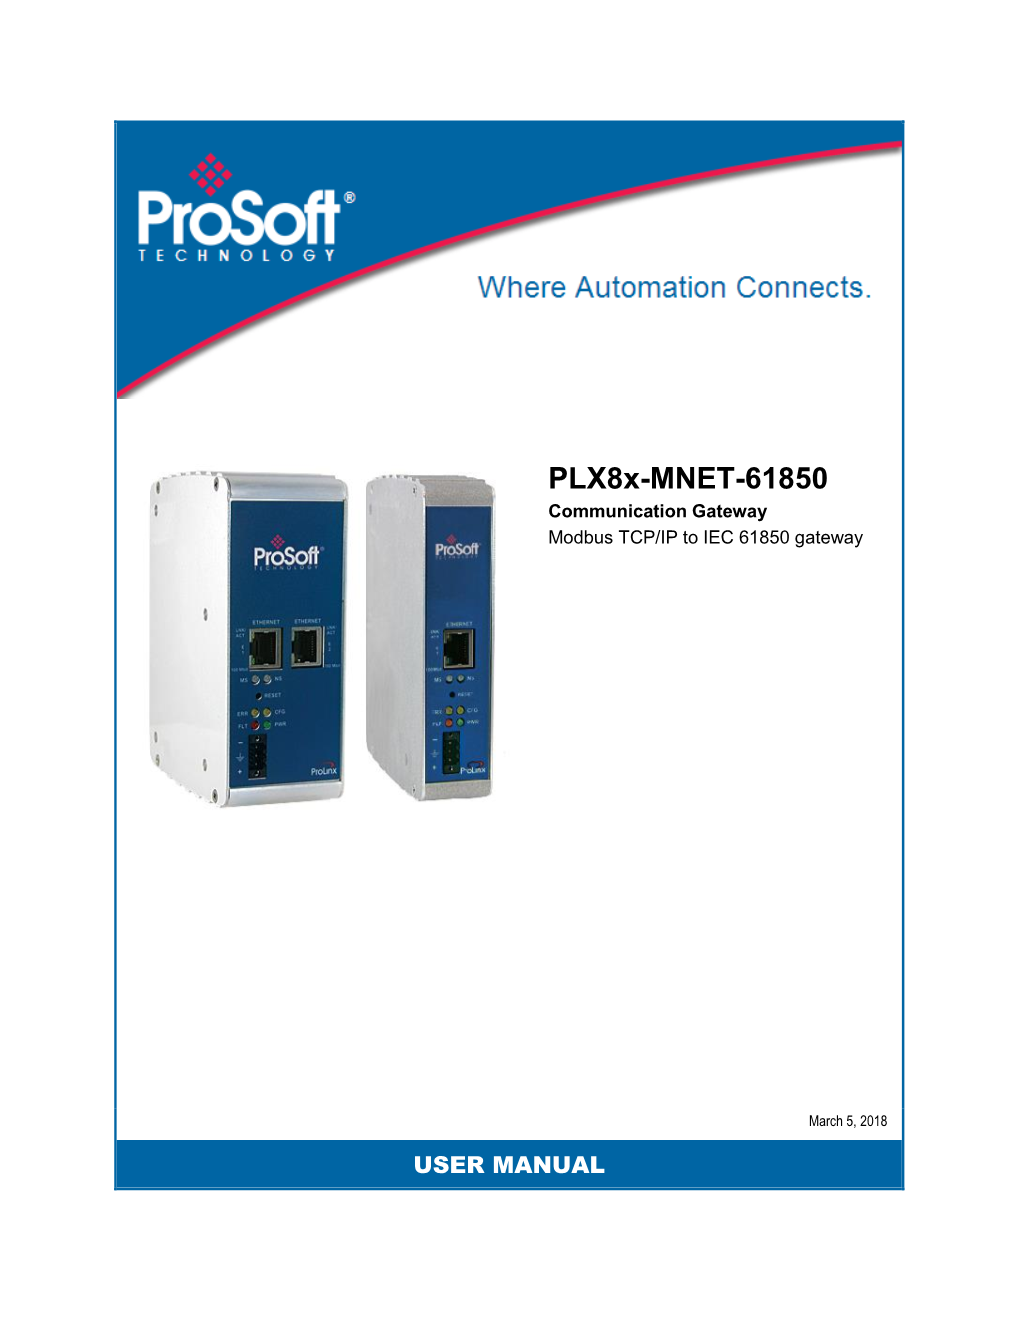 Plx8x-MNET-61850 User Manual Rev 1.0.0